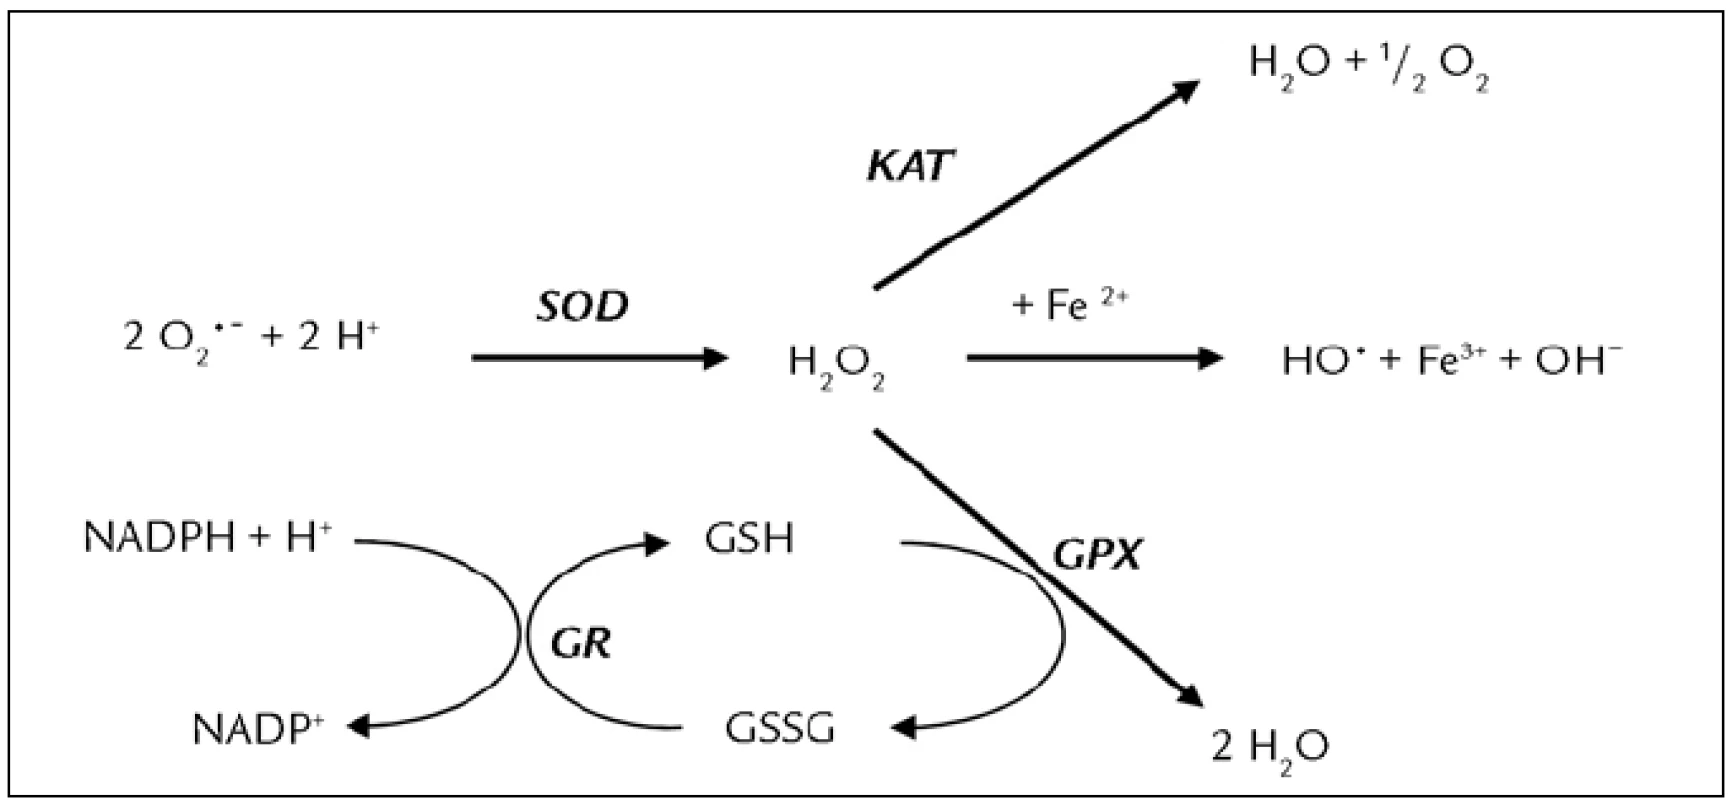 Vzájemný vztah antioxidačních enzymů [35]. Kataláza (KAT), superoxiddismutáza (SOD), glutationreduktáza (GR), glutationperoxidáza (GPX), redukovaný glutation (GSH), oxidovaný glutation (GSSG).